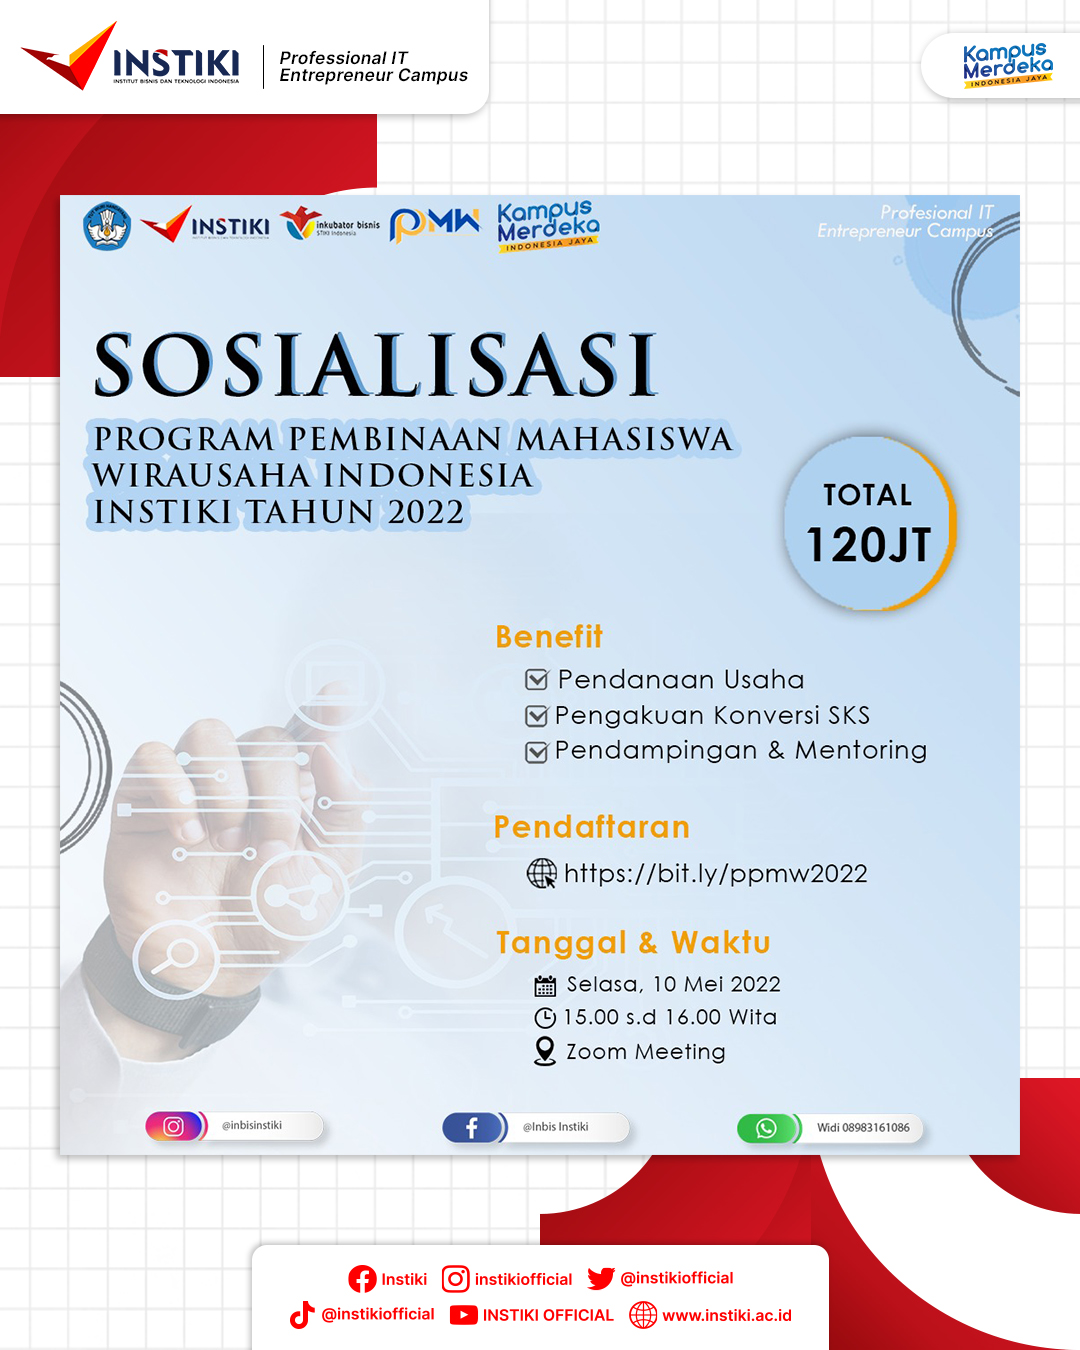 SOSIALISASI PROGRAM PEMBINAAN MAHASISWA WIRAUSAHA (P2MW) INDONESIA